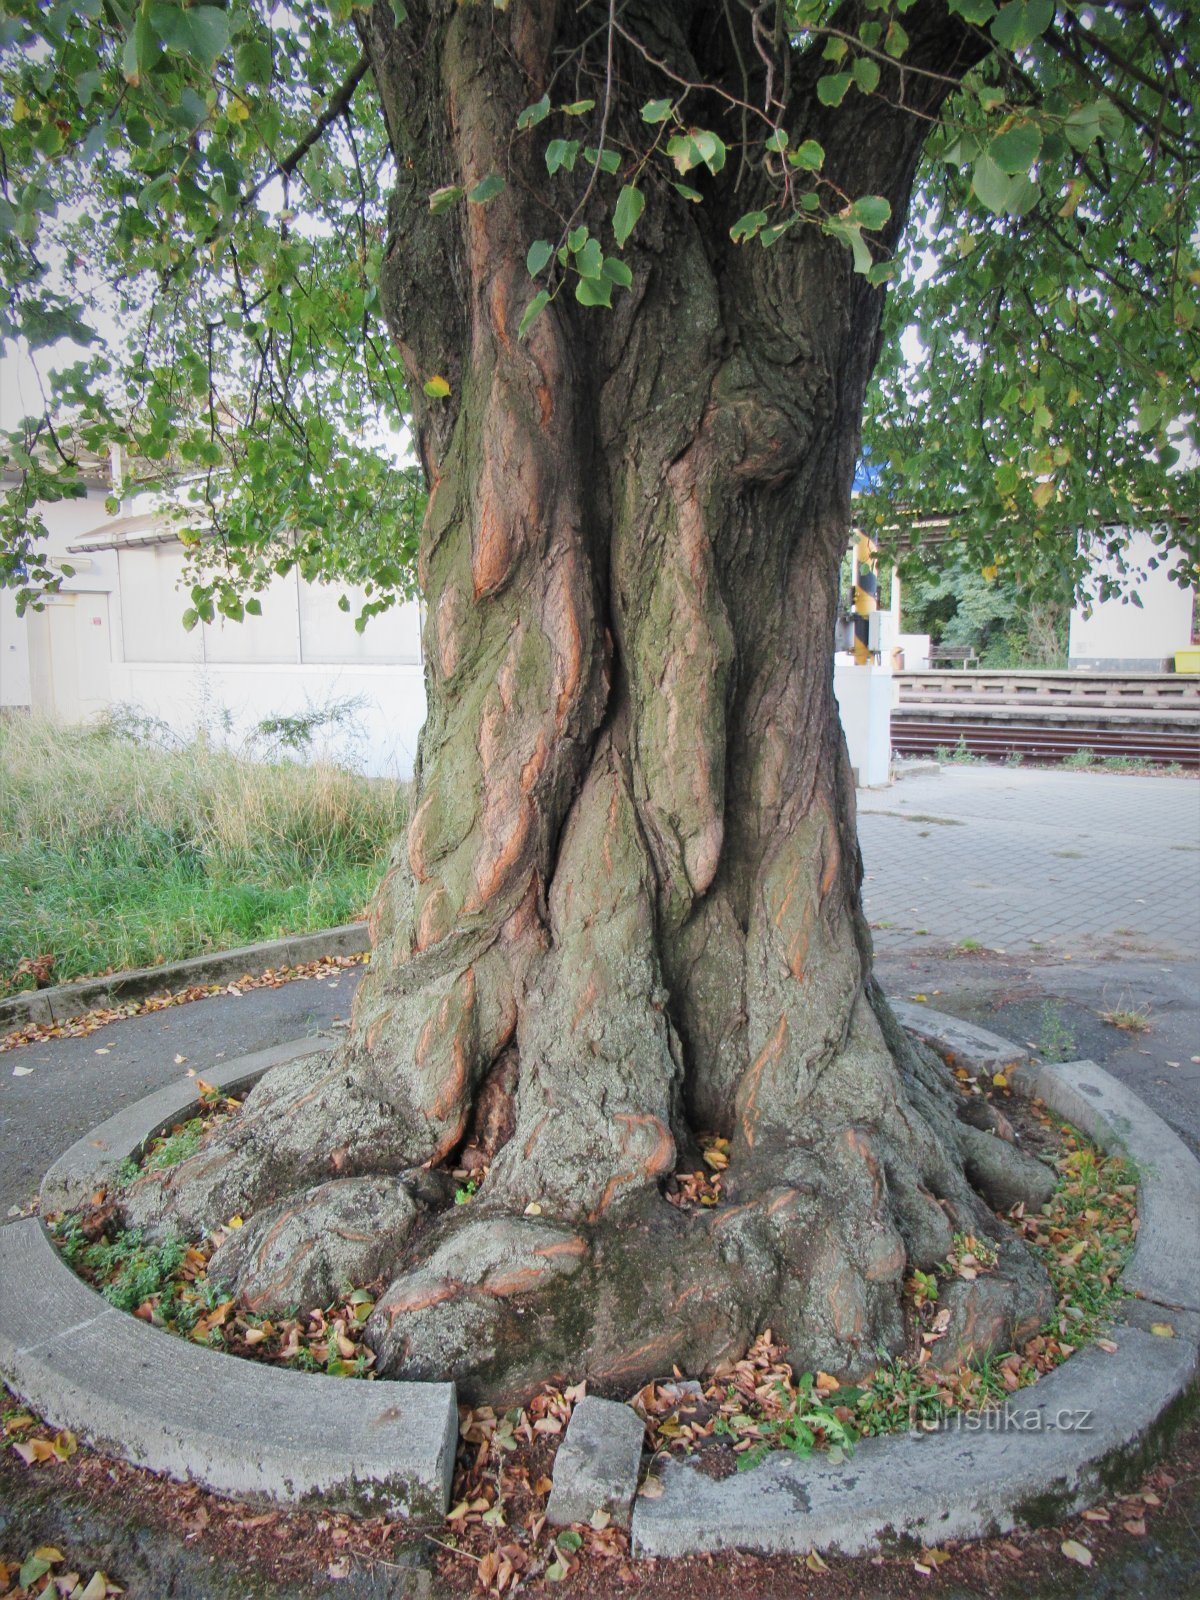 Moravský Písek - linden tree near the railway station